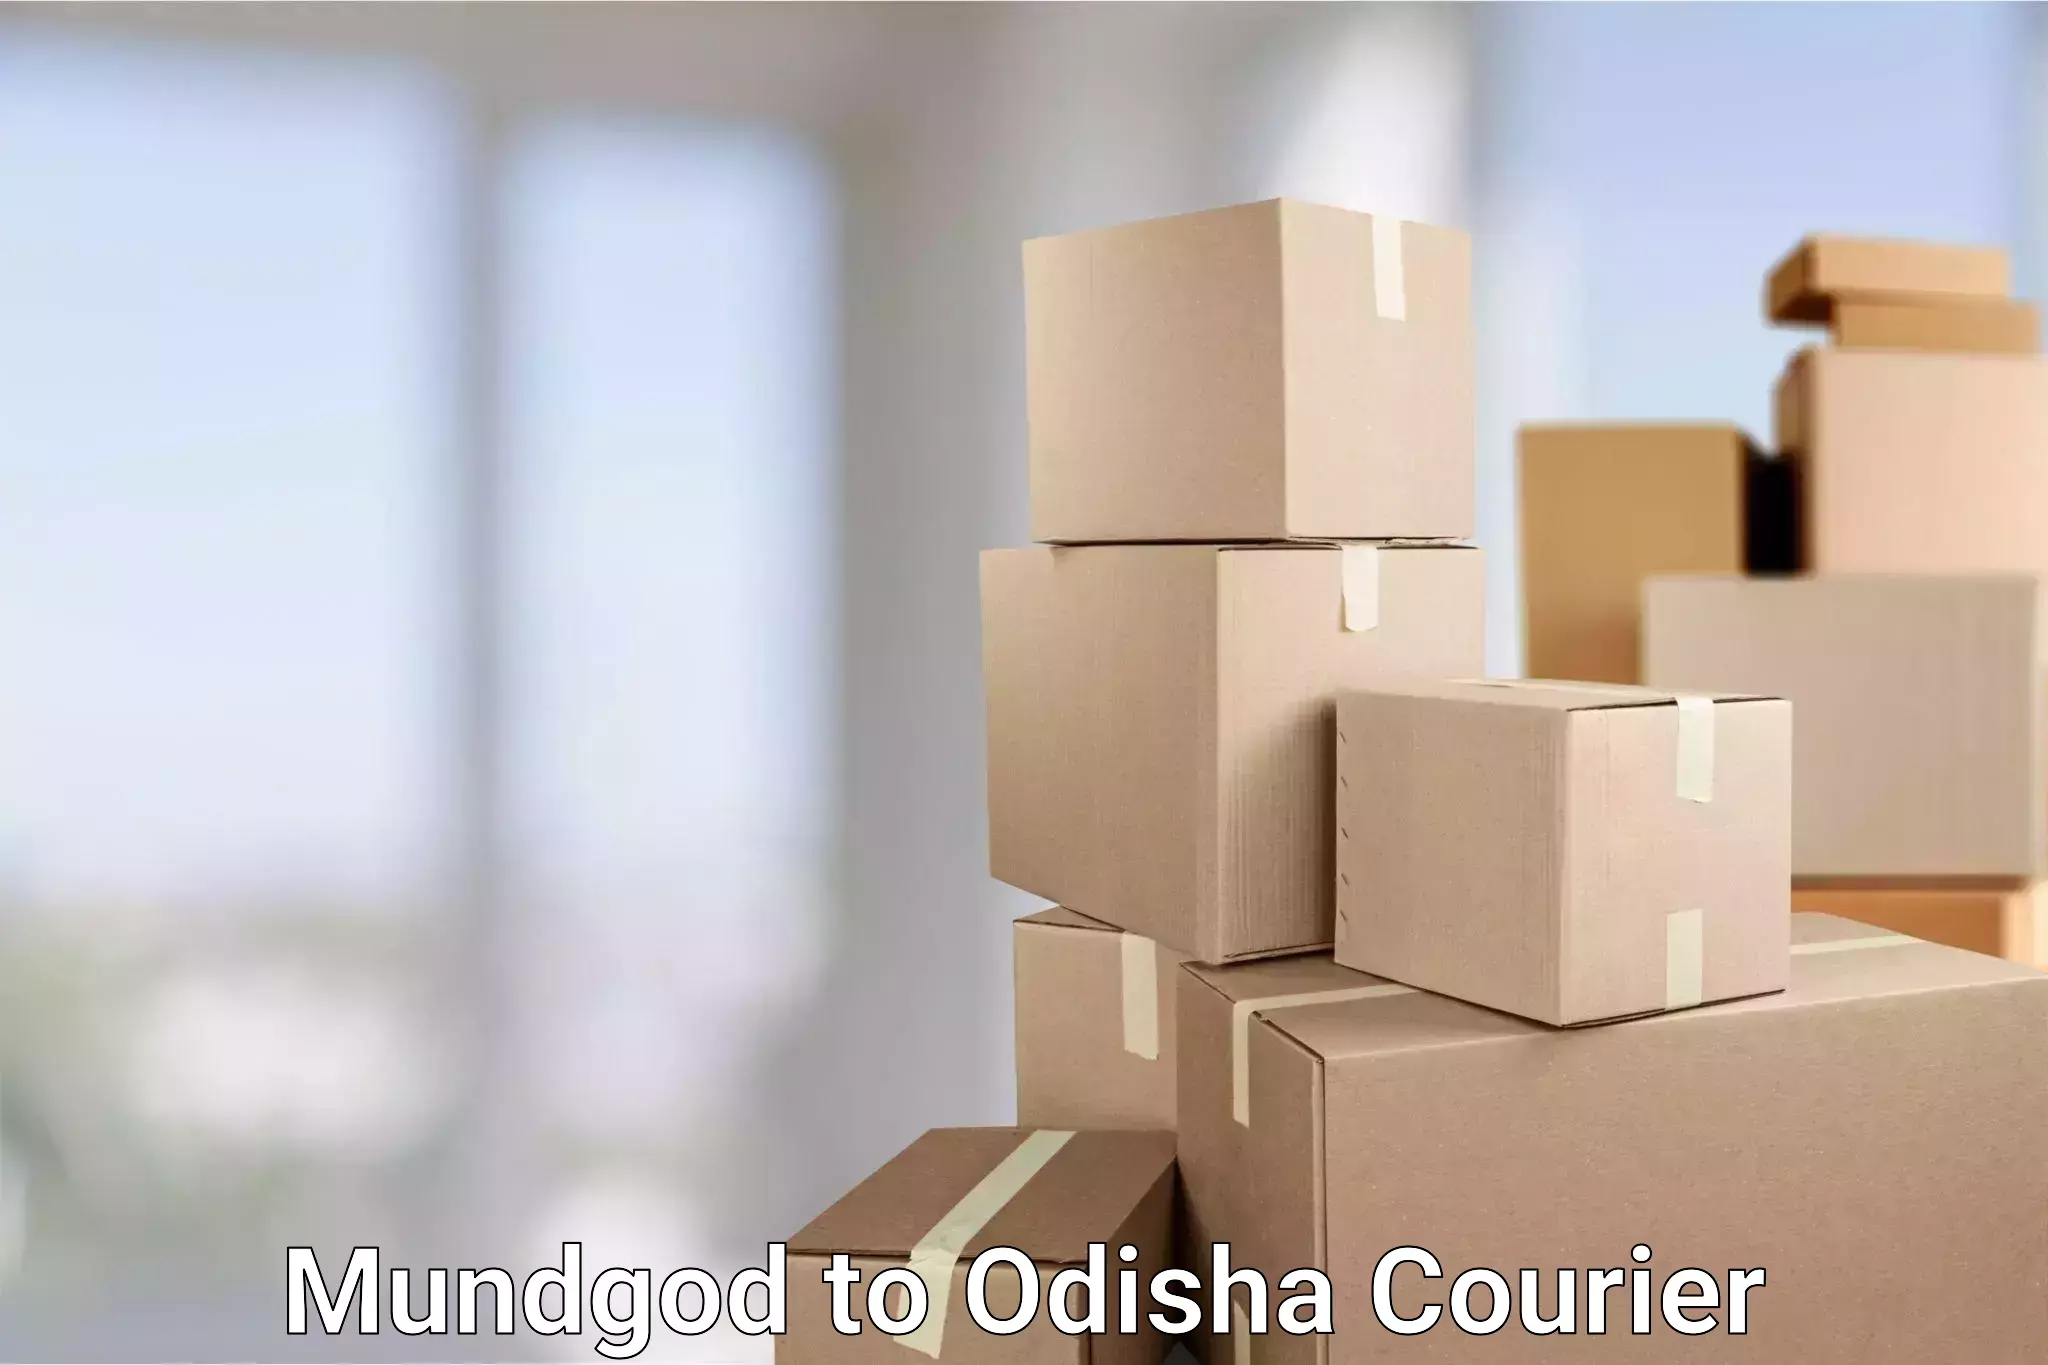 Logistics service provider Mundgod to Ukhunda